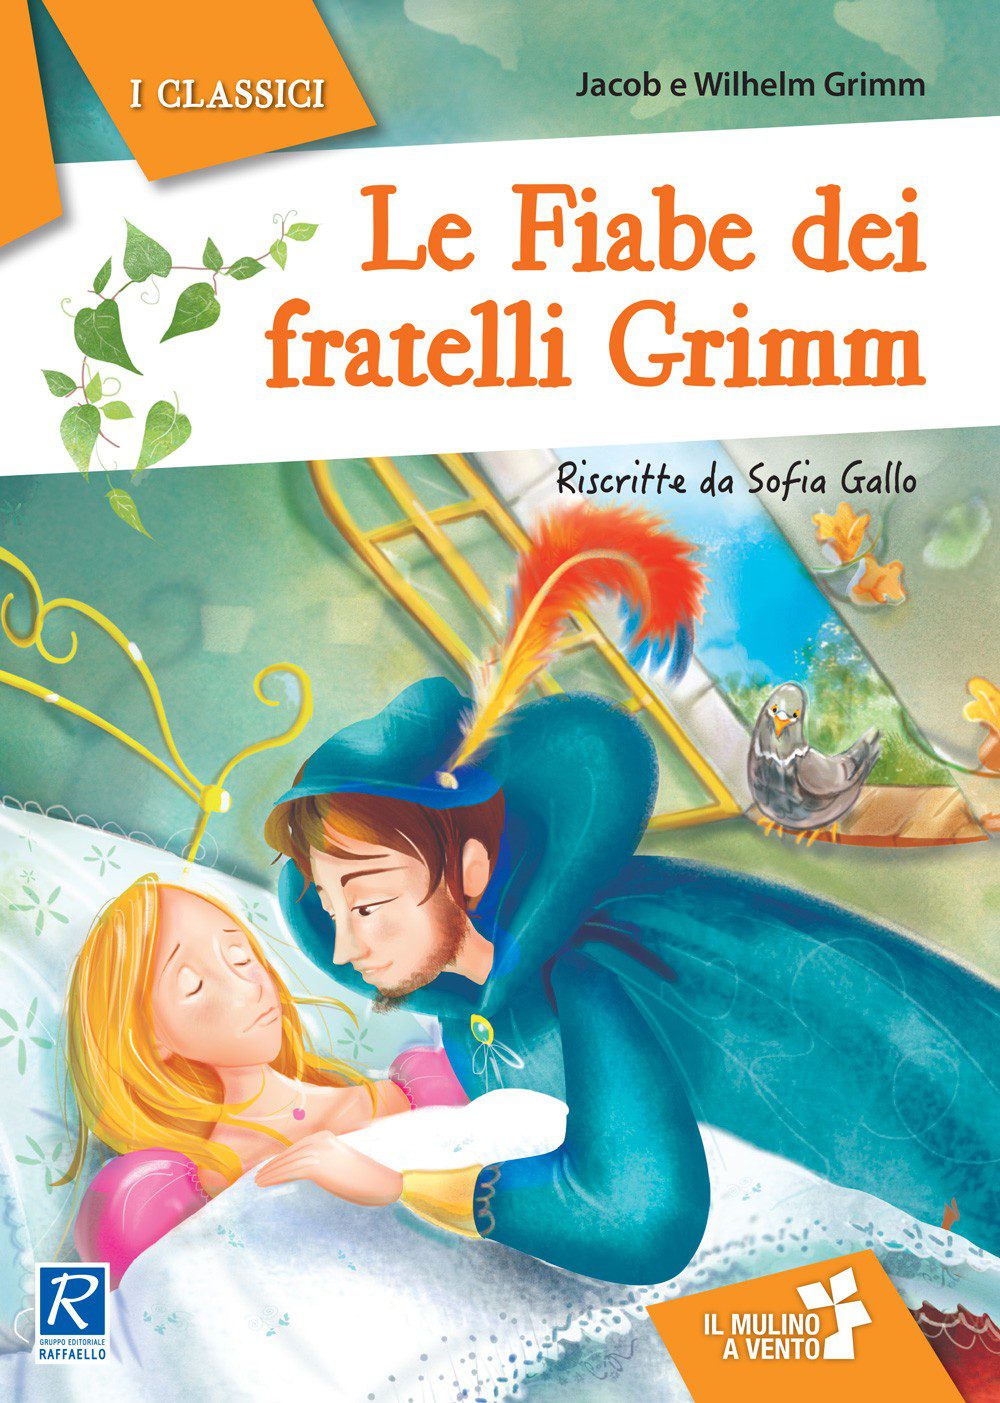 Le fiabe dei fratelli Grimm - Raffaello Bookshop